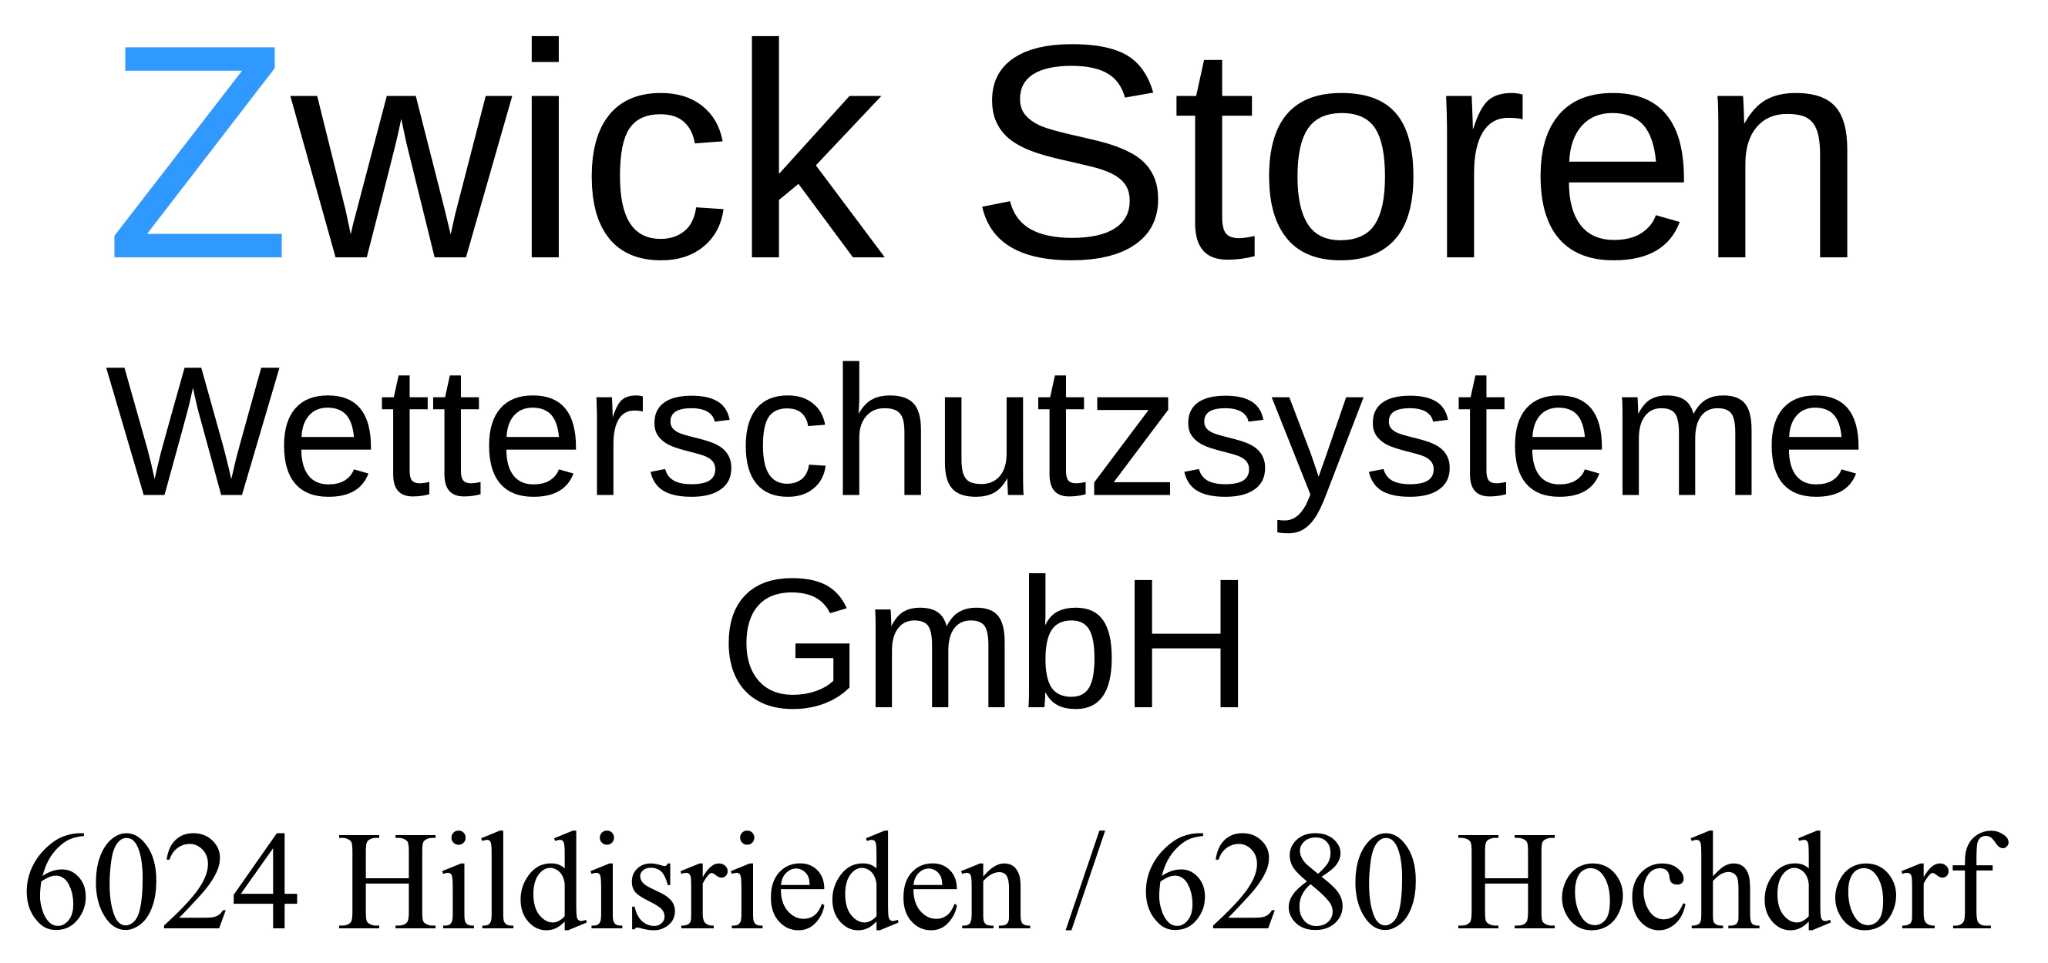 Zwick Storen und Wetterschutzsysteme GmbH